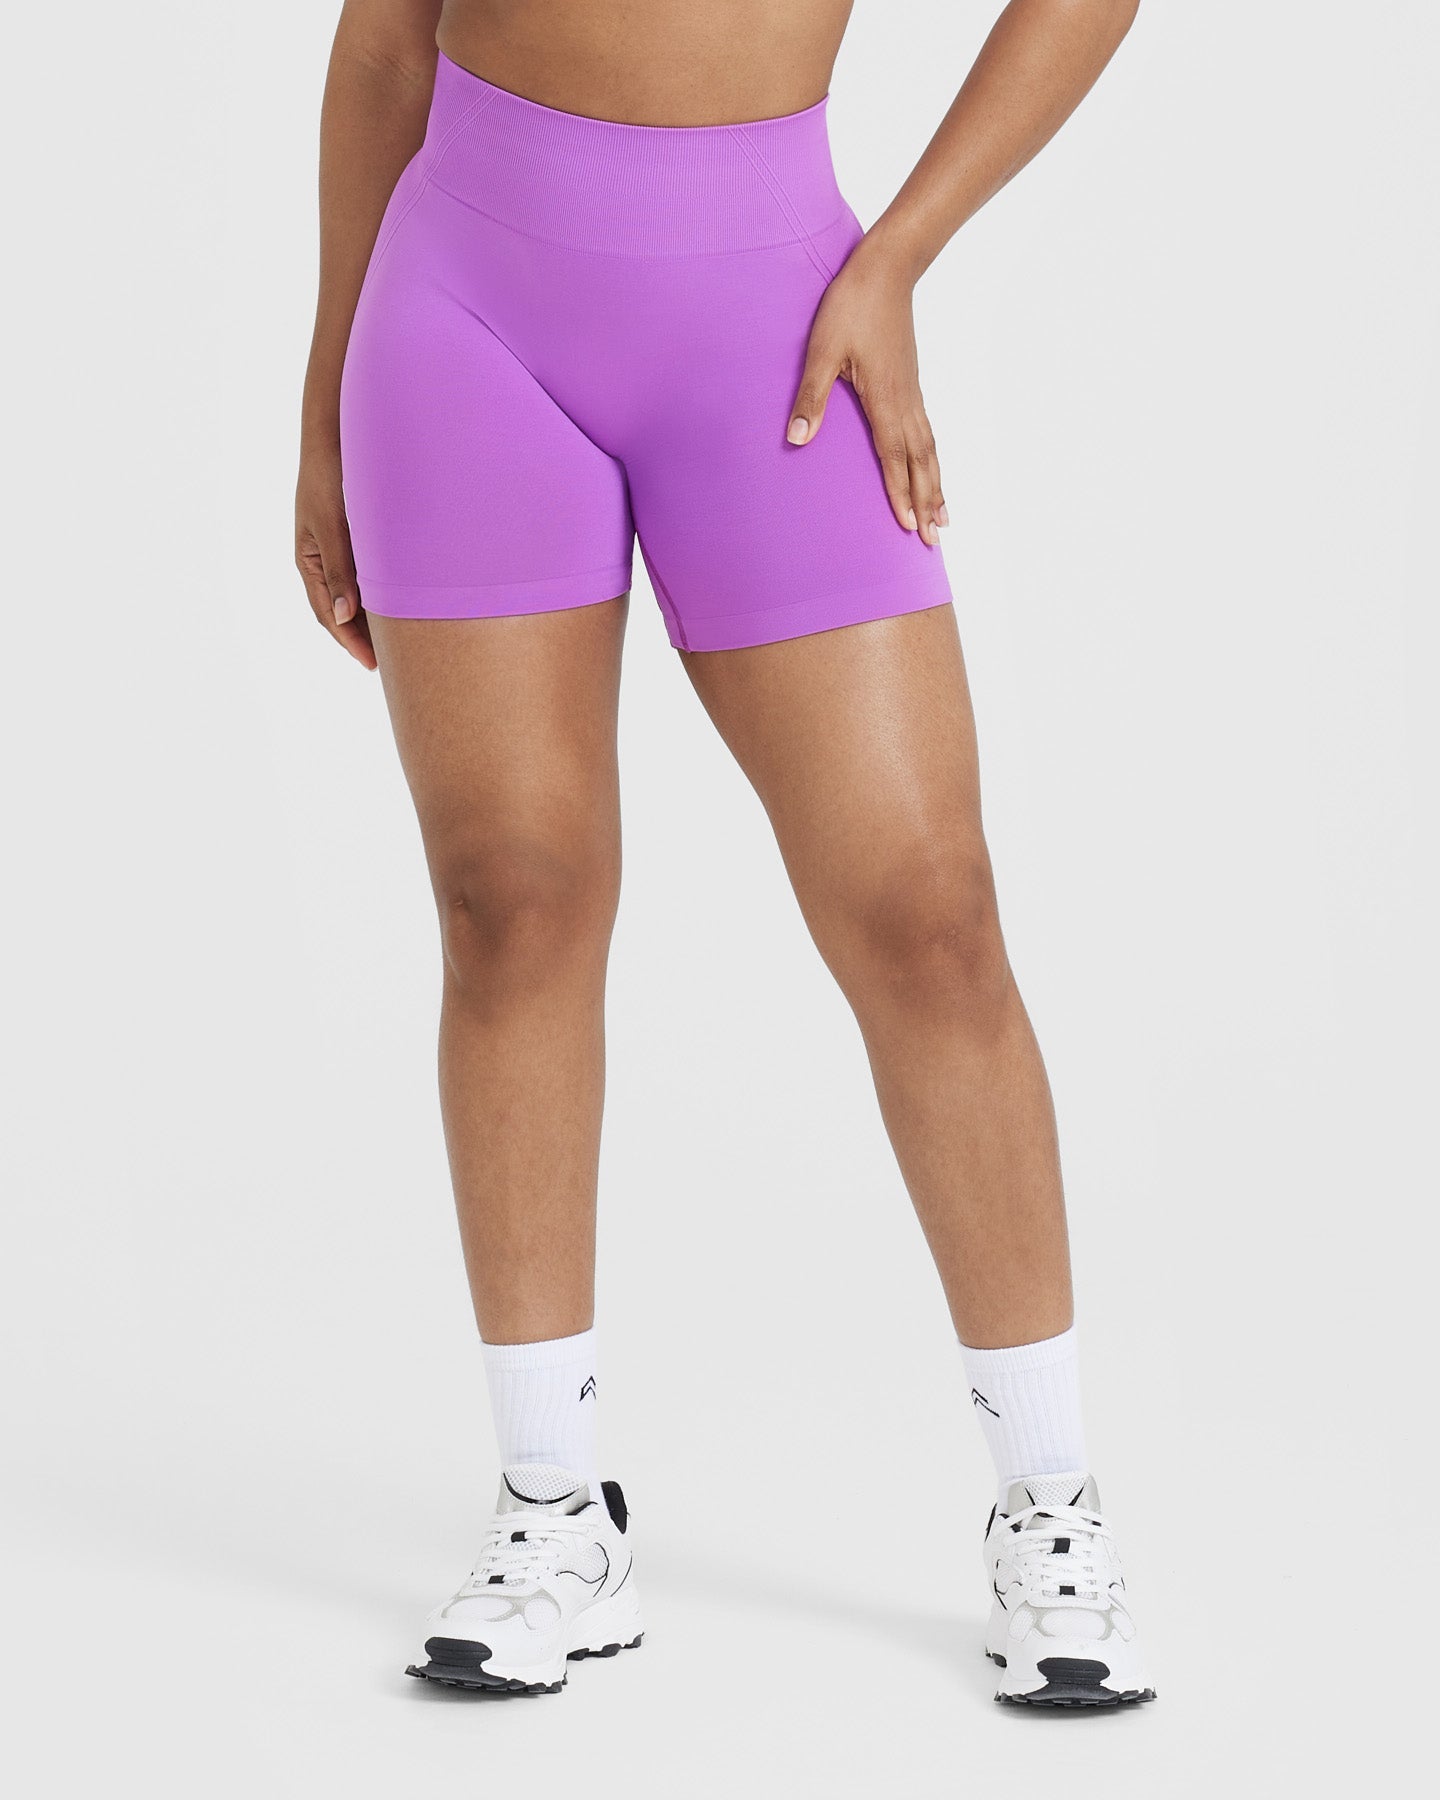 Women's Purple Shorts